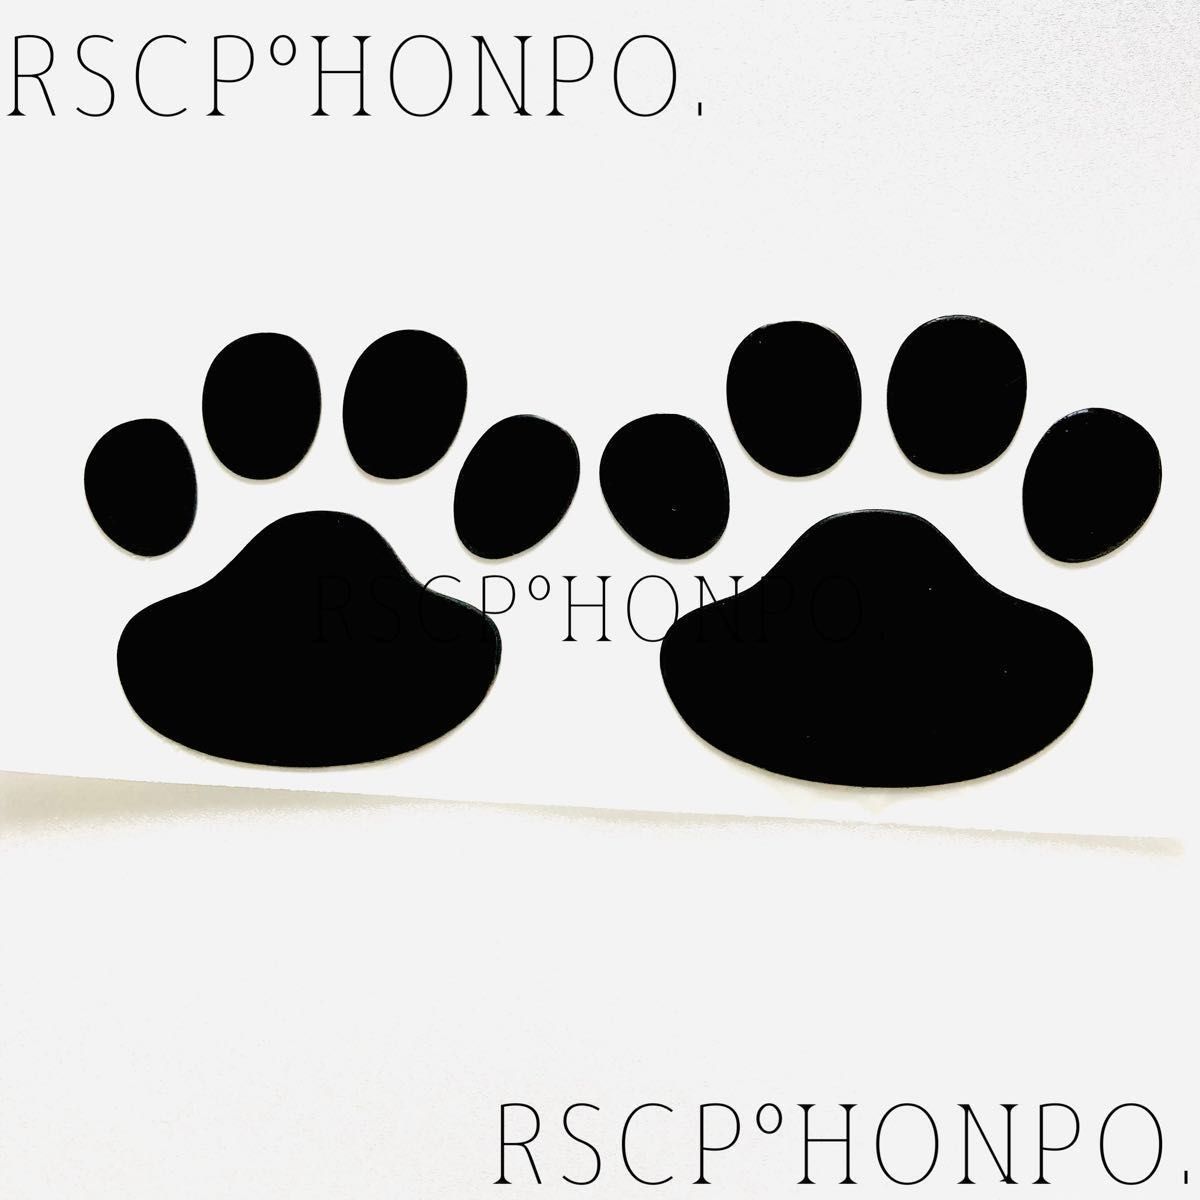 黒色 肉球でおしゃれなドレスアップ ロゴ マーク エンブレム ステッカー シール フロント リア ボンネット 猫 犬 ペット 足跡